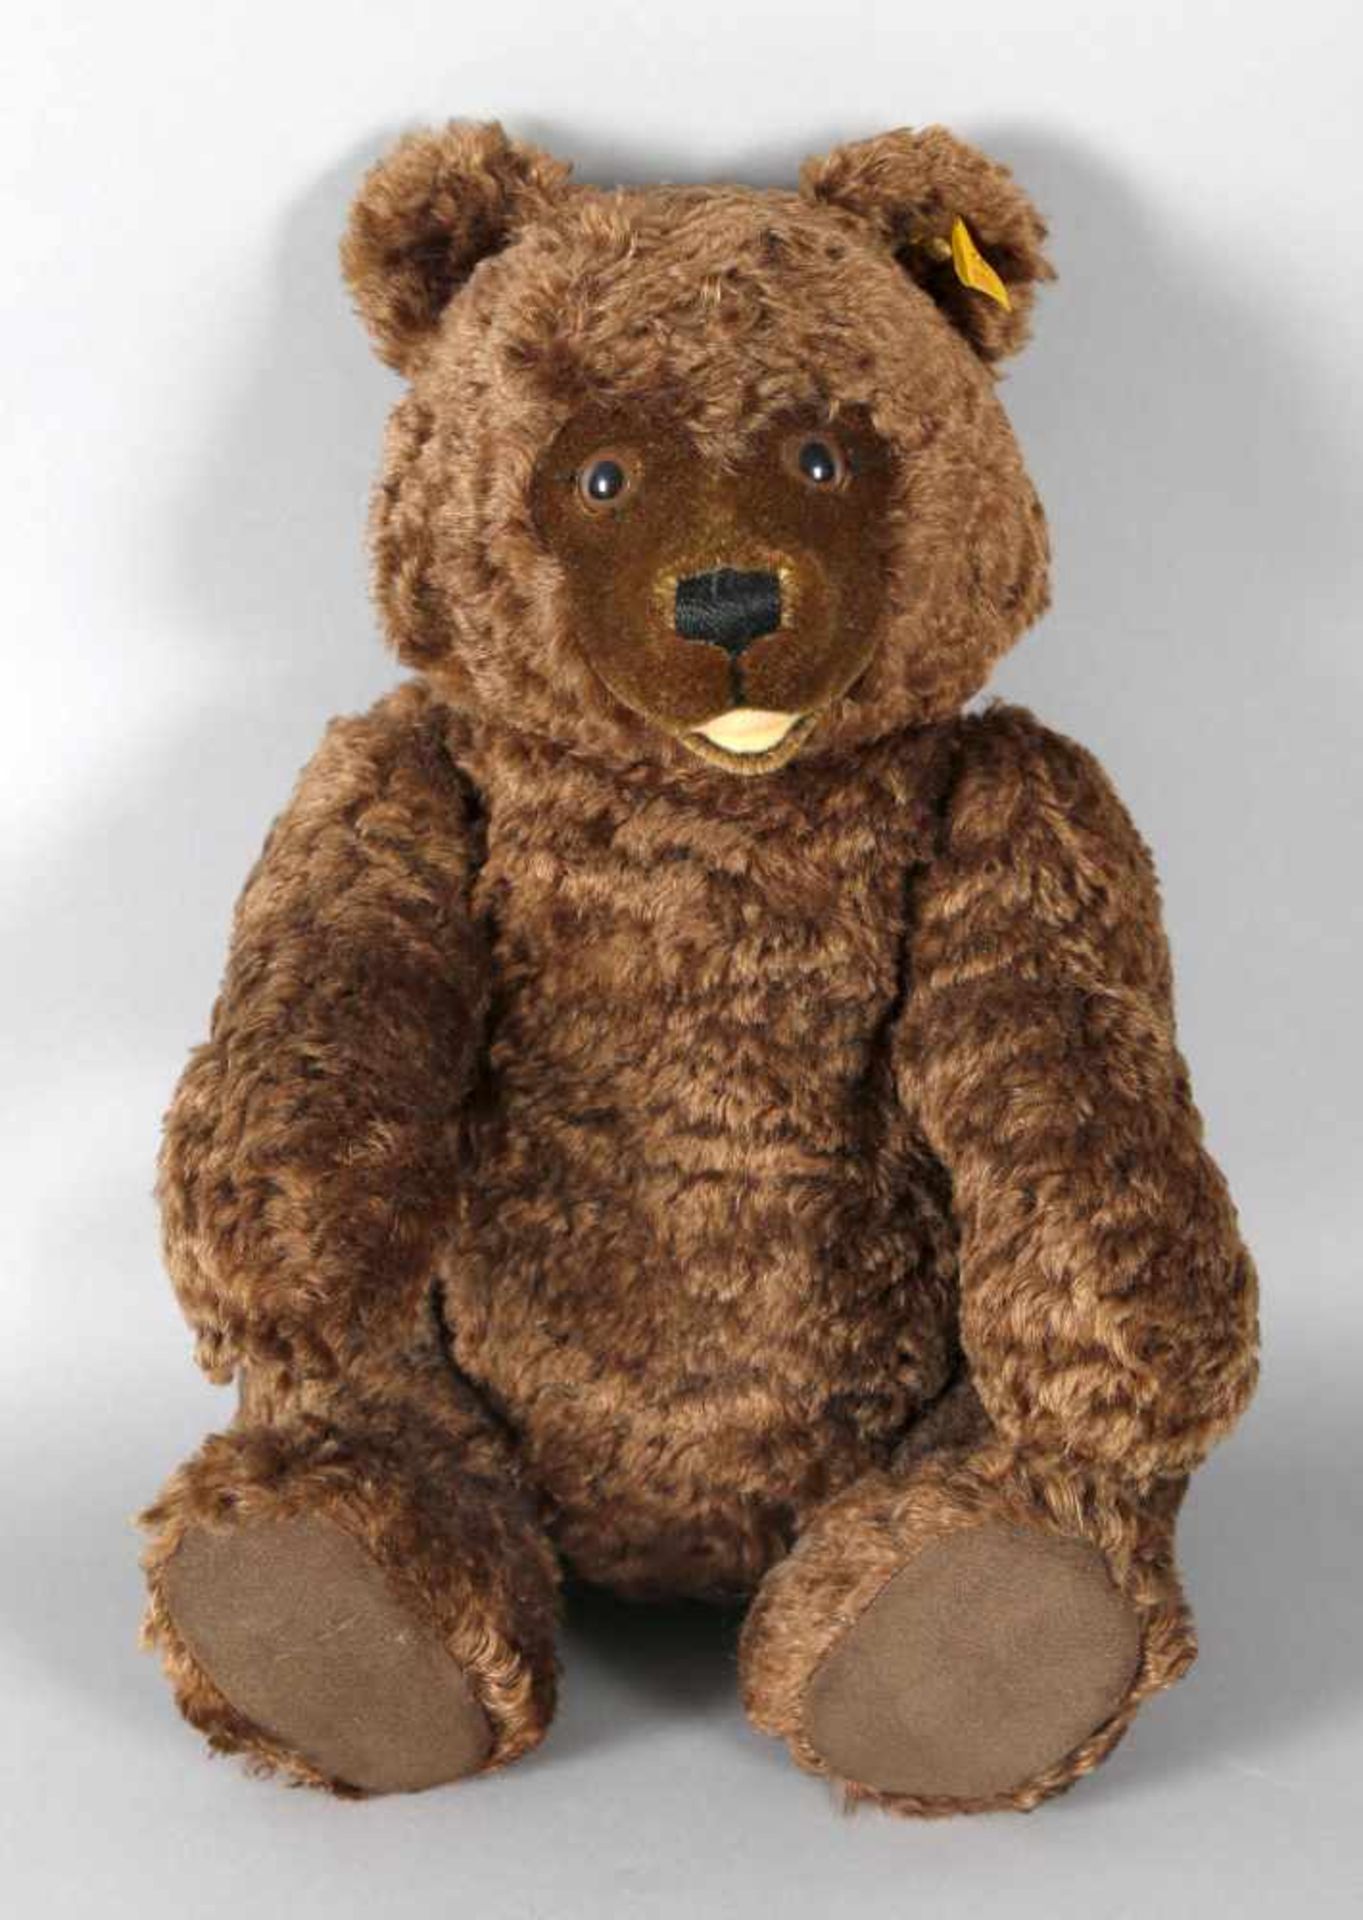 Steiff Teddybär Nr. 008542, um 1986/87braun, mit Stimmdose, Knopf im Ohr, Bezug 70 % Wolle und